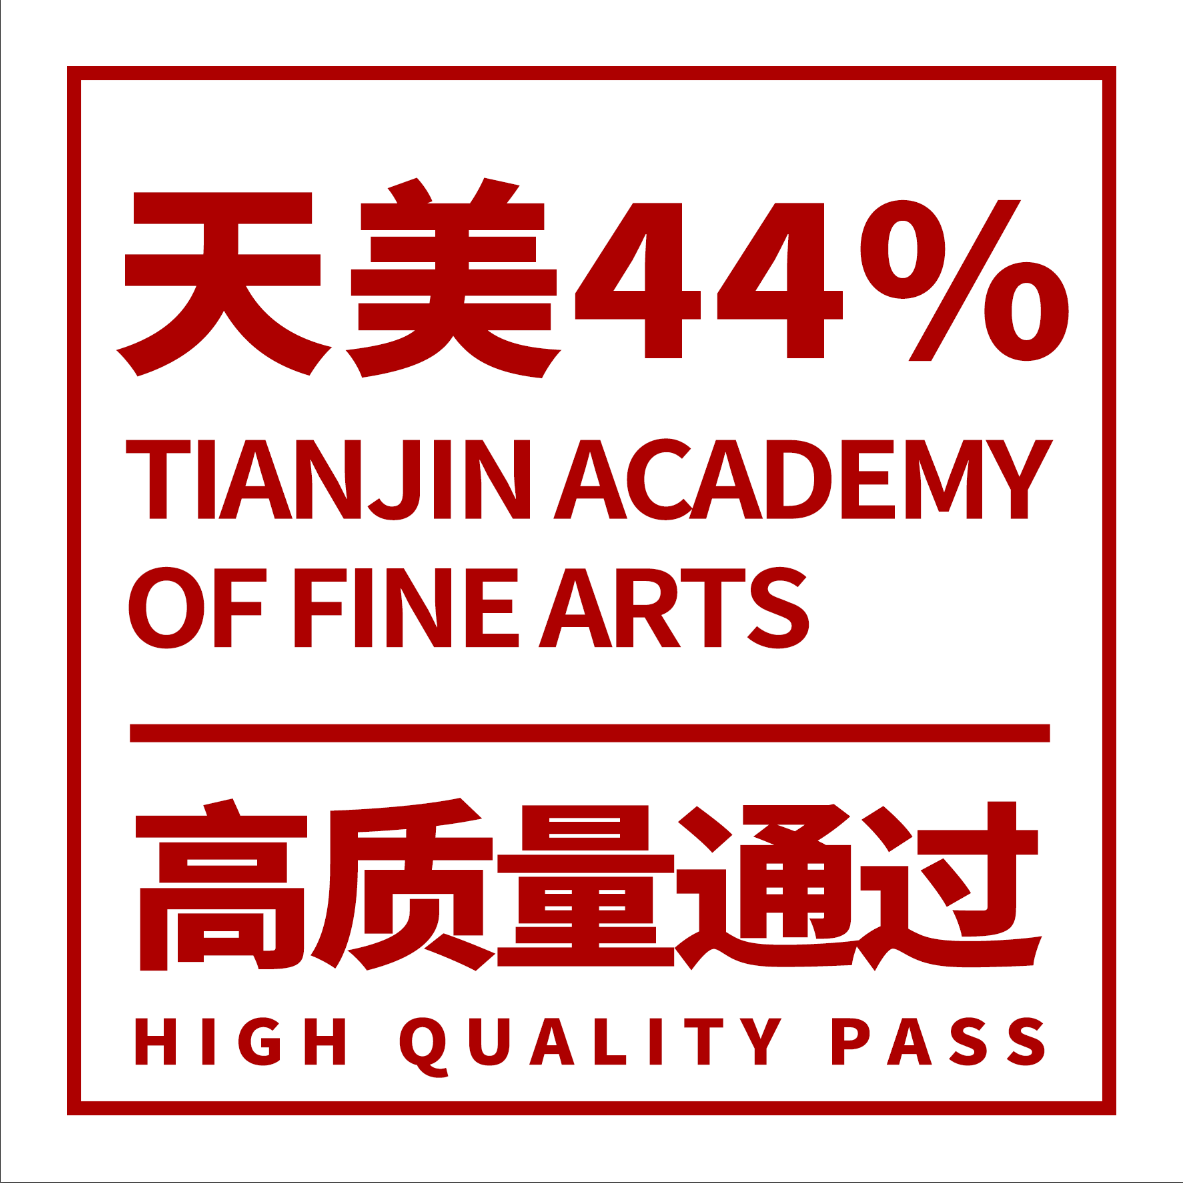 【课题100教育】已44%高质量通过天津美术学院